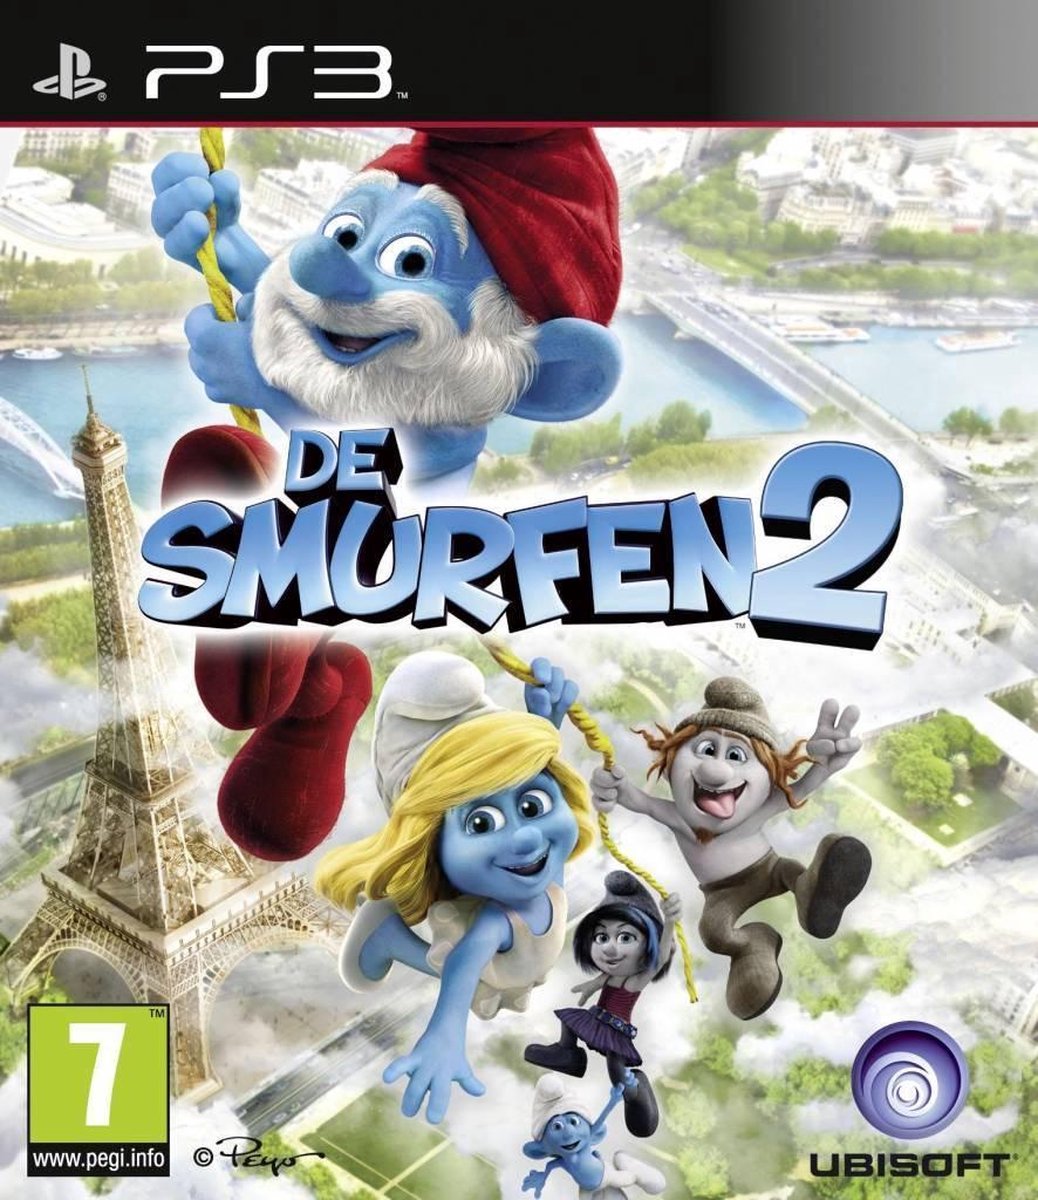 De Smurfen 2 Gamesellers.nl